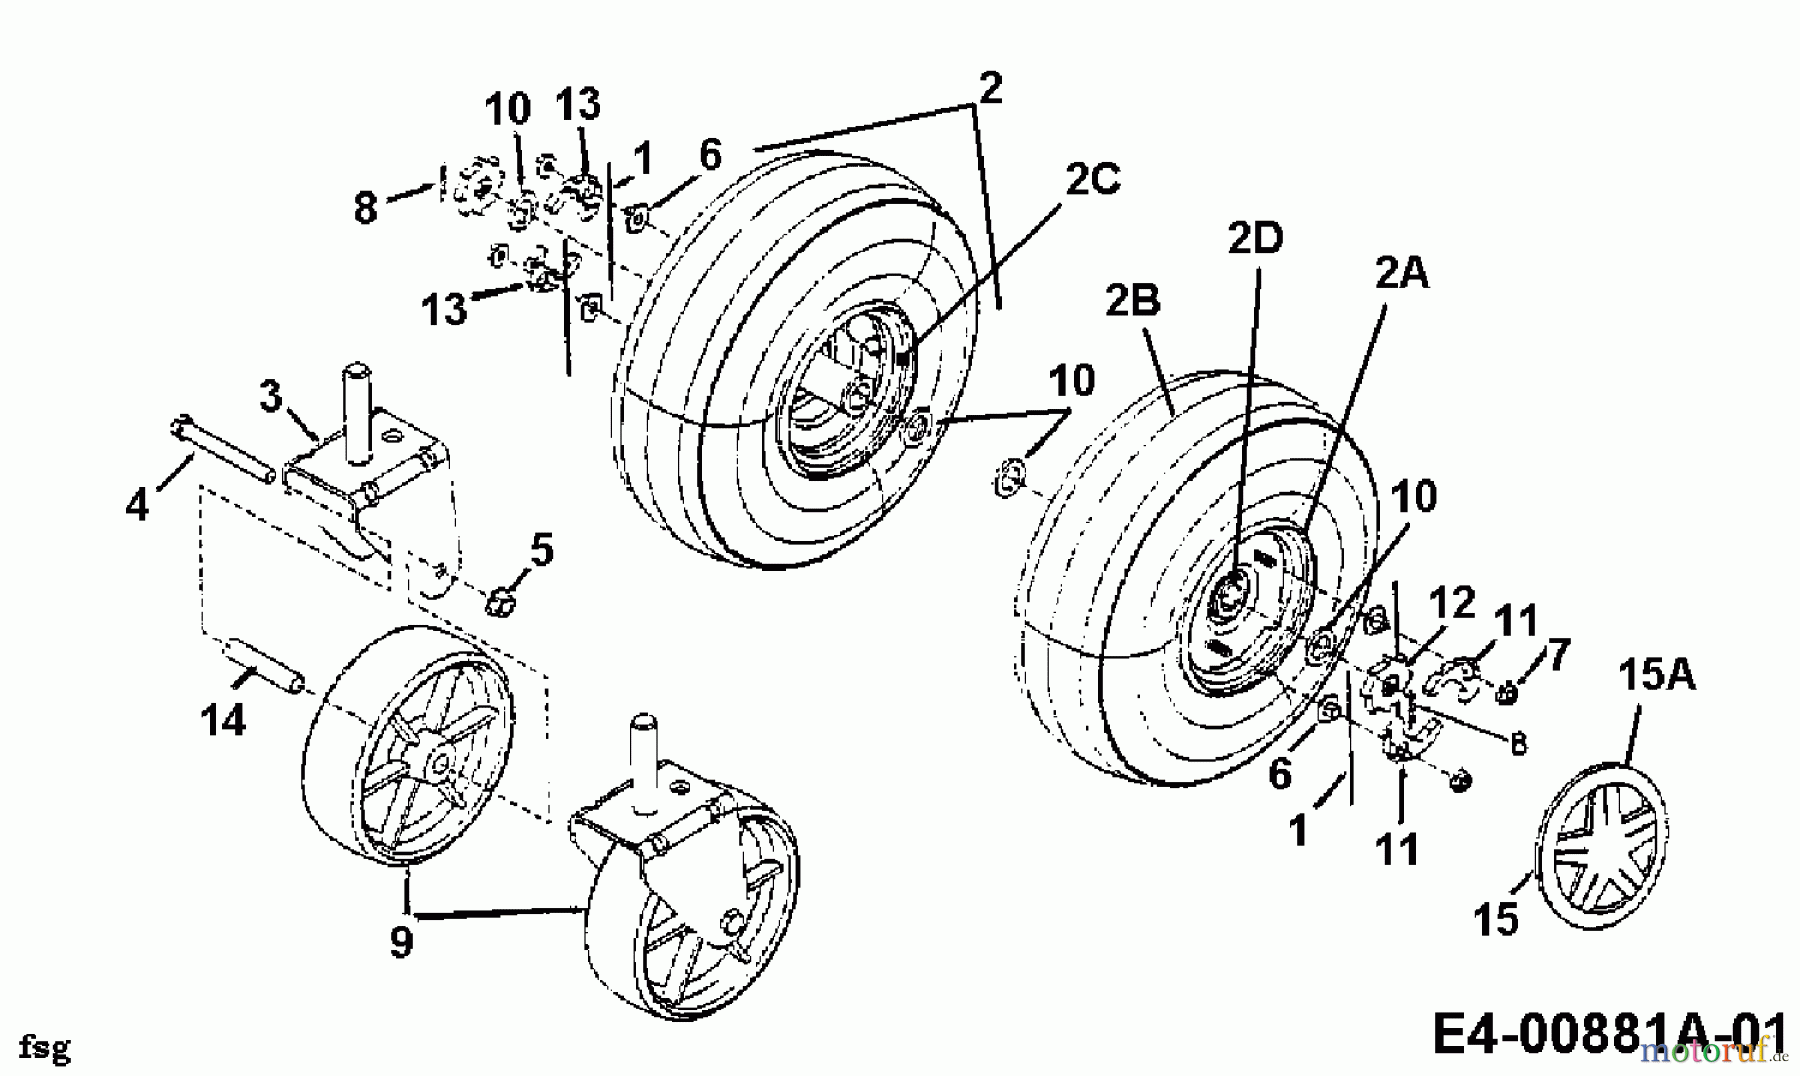  Gutbrod Leaf blower, Blower vac 202 24A-202B604  (1999) Wheels